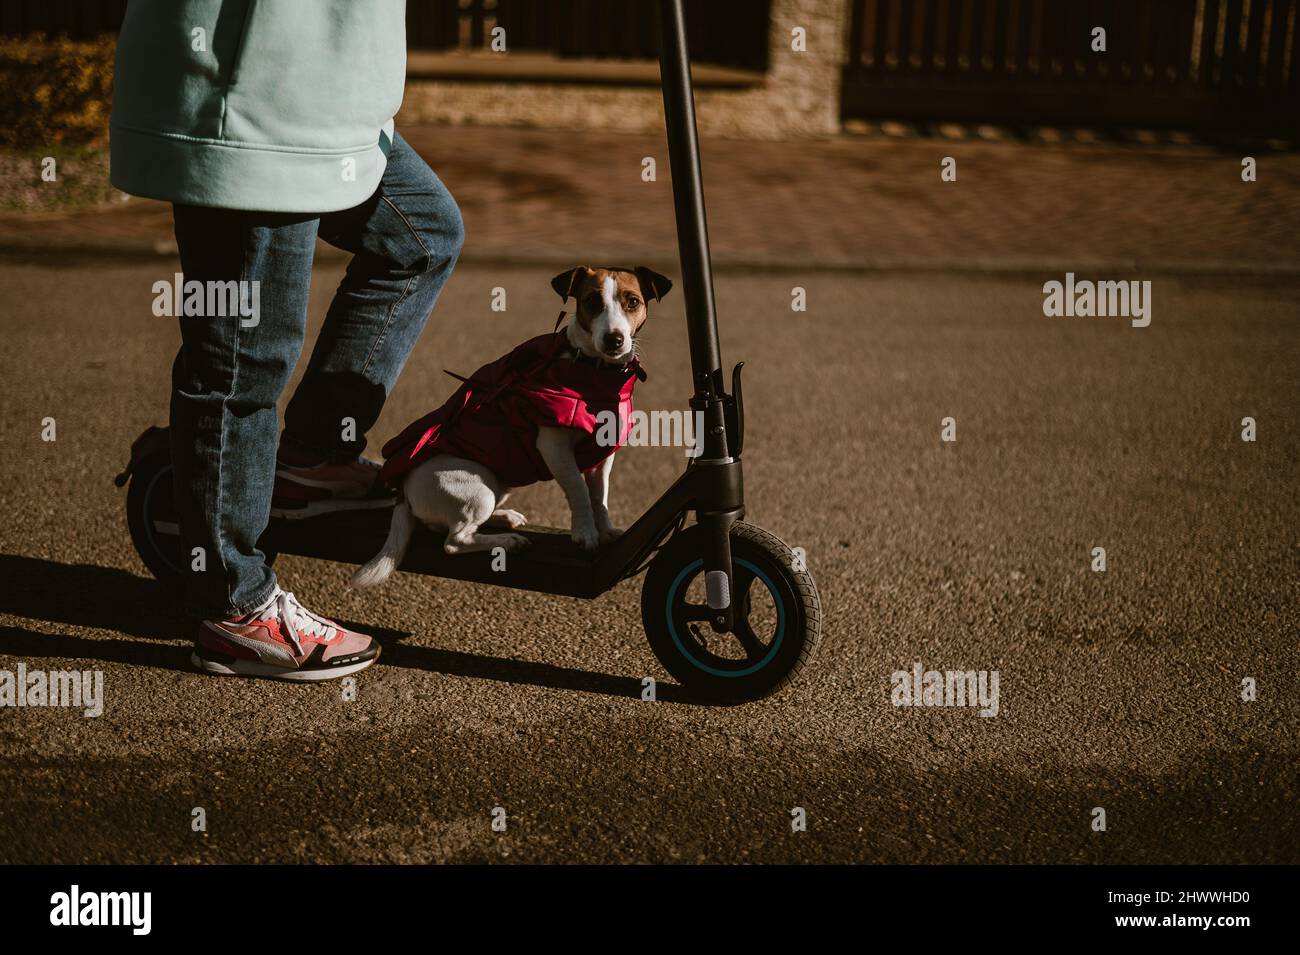 Une femme fait un scooter électrique autour du village de la maison avec le chien.Jack Russell Terrier dans une veste rose lors d'une belle journée d'automne. Banque D'Images